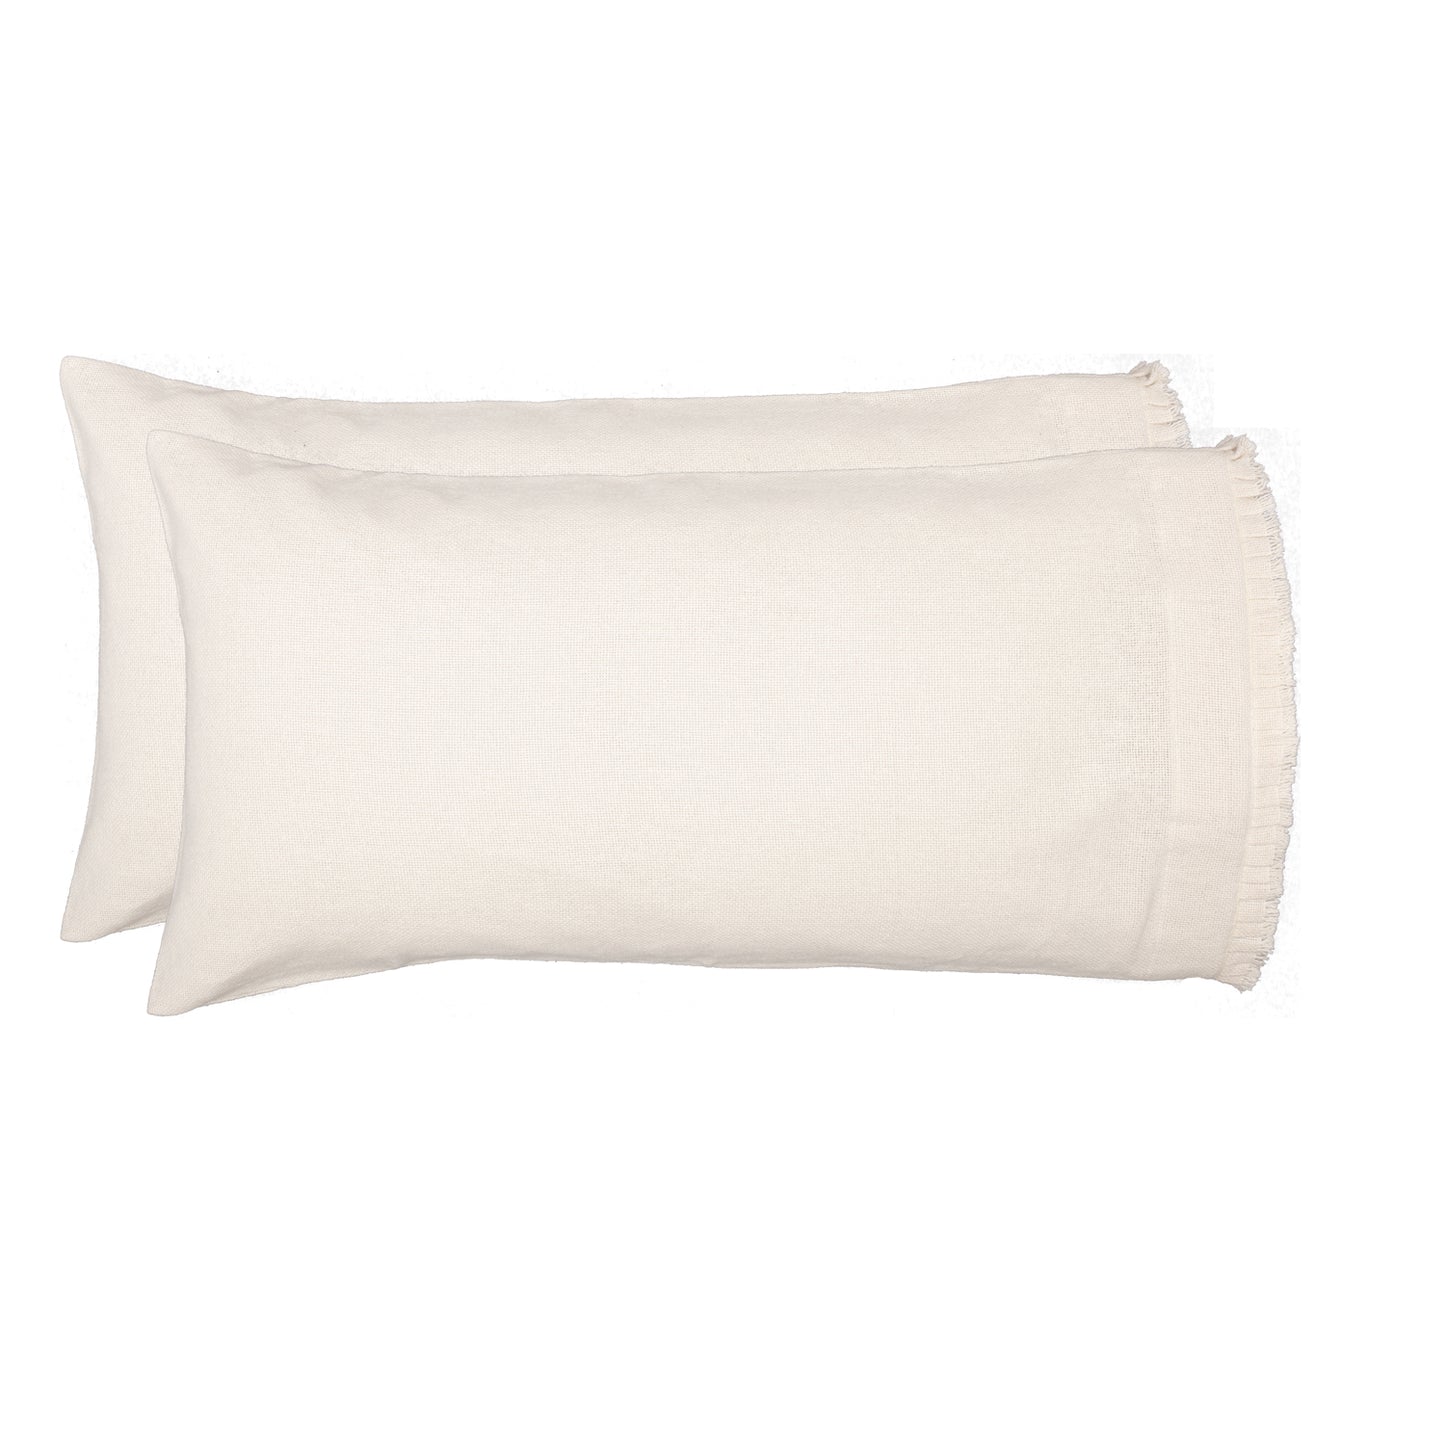 51817-Burlap-Antique-White-King-Pillow-Case-w-Fringed-Ruffle-Set-of-2-21x40-image-4